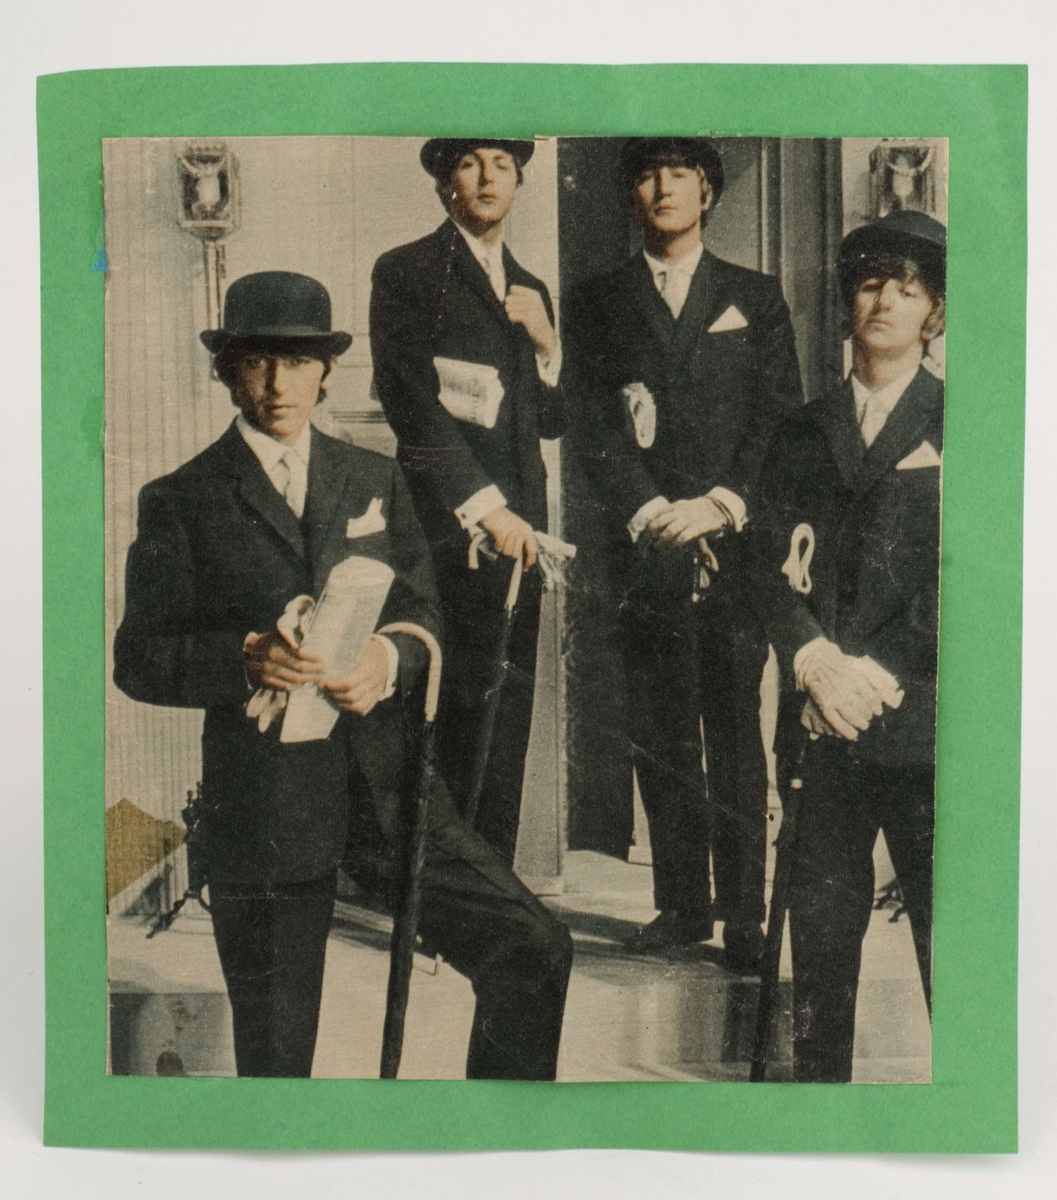 Fargefoto av Beatles-medlemmer limt på grønt papir